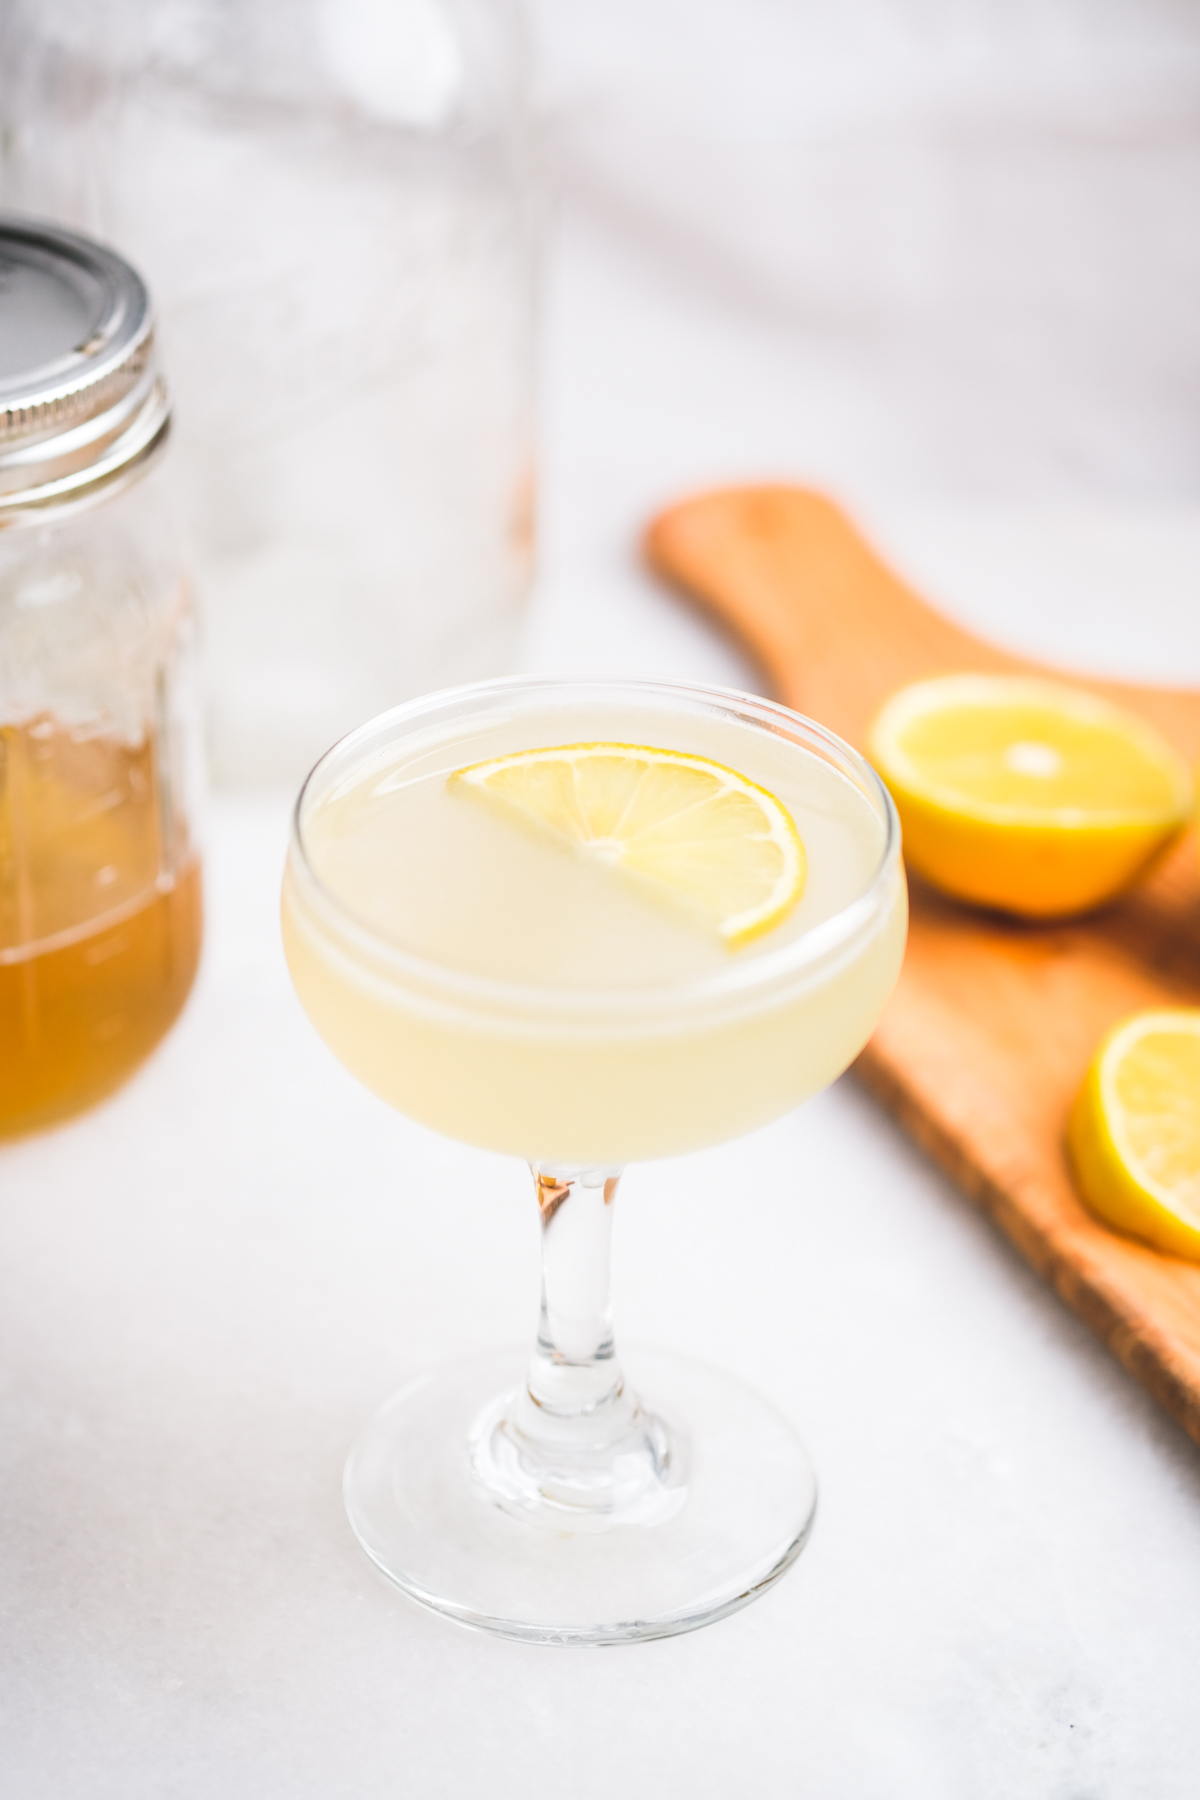 Honey Lemon Gimlet Cocktail Recipe